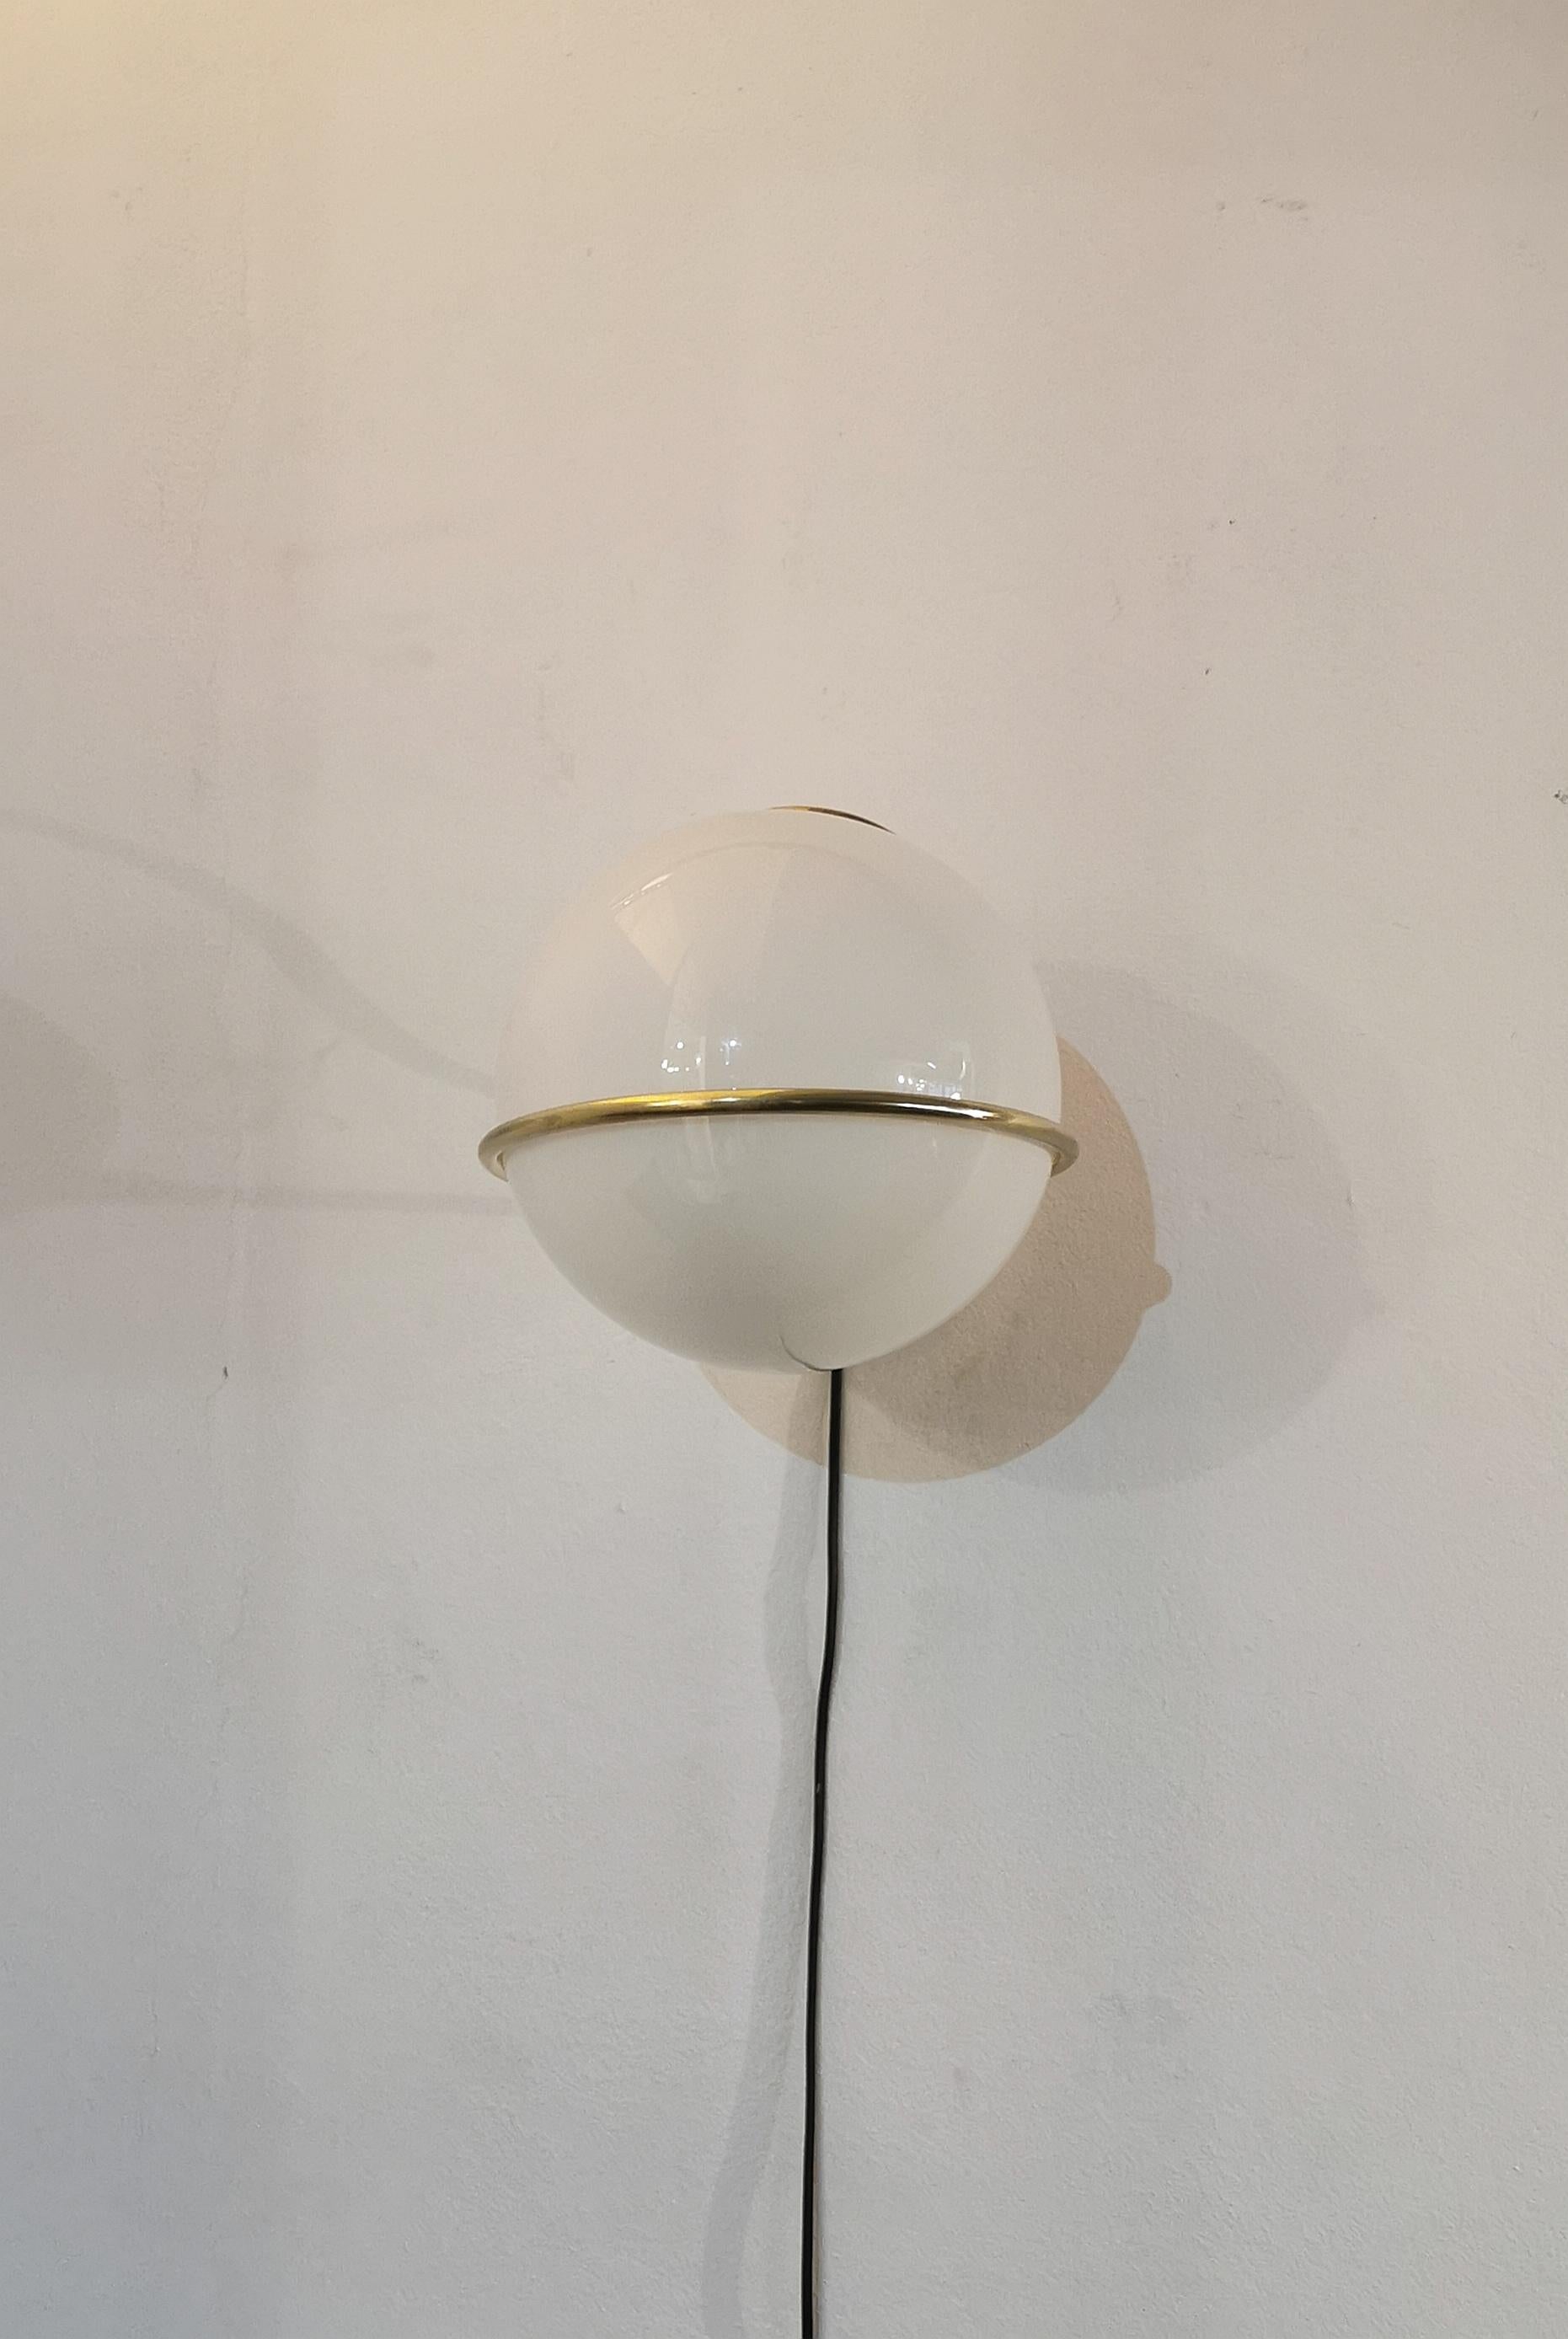 Lampada a parete Sconce Wall Lamp Brass White Glass Midcentury Italian Design, 1960s In condizioni buone in vendita a Palermo, IT